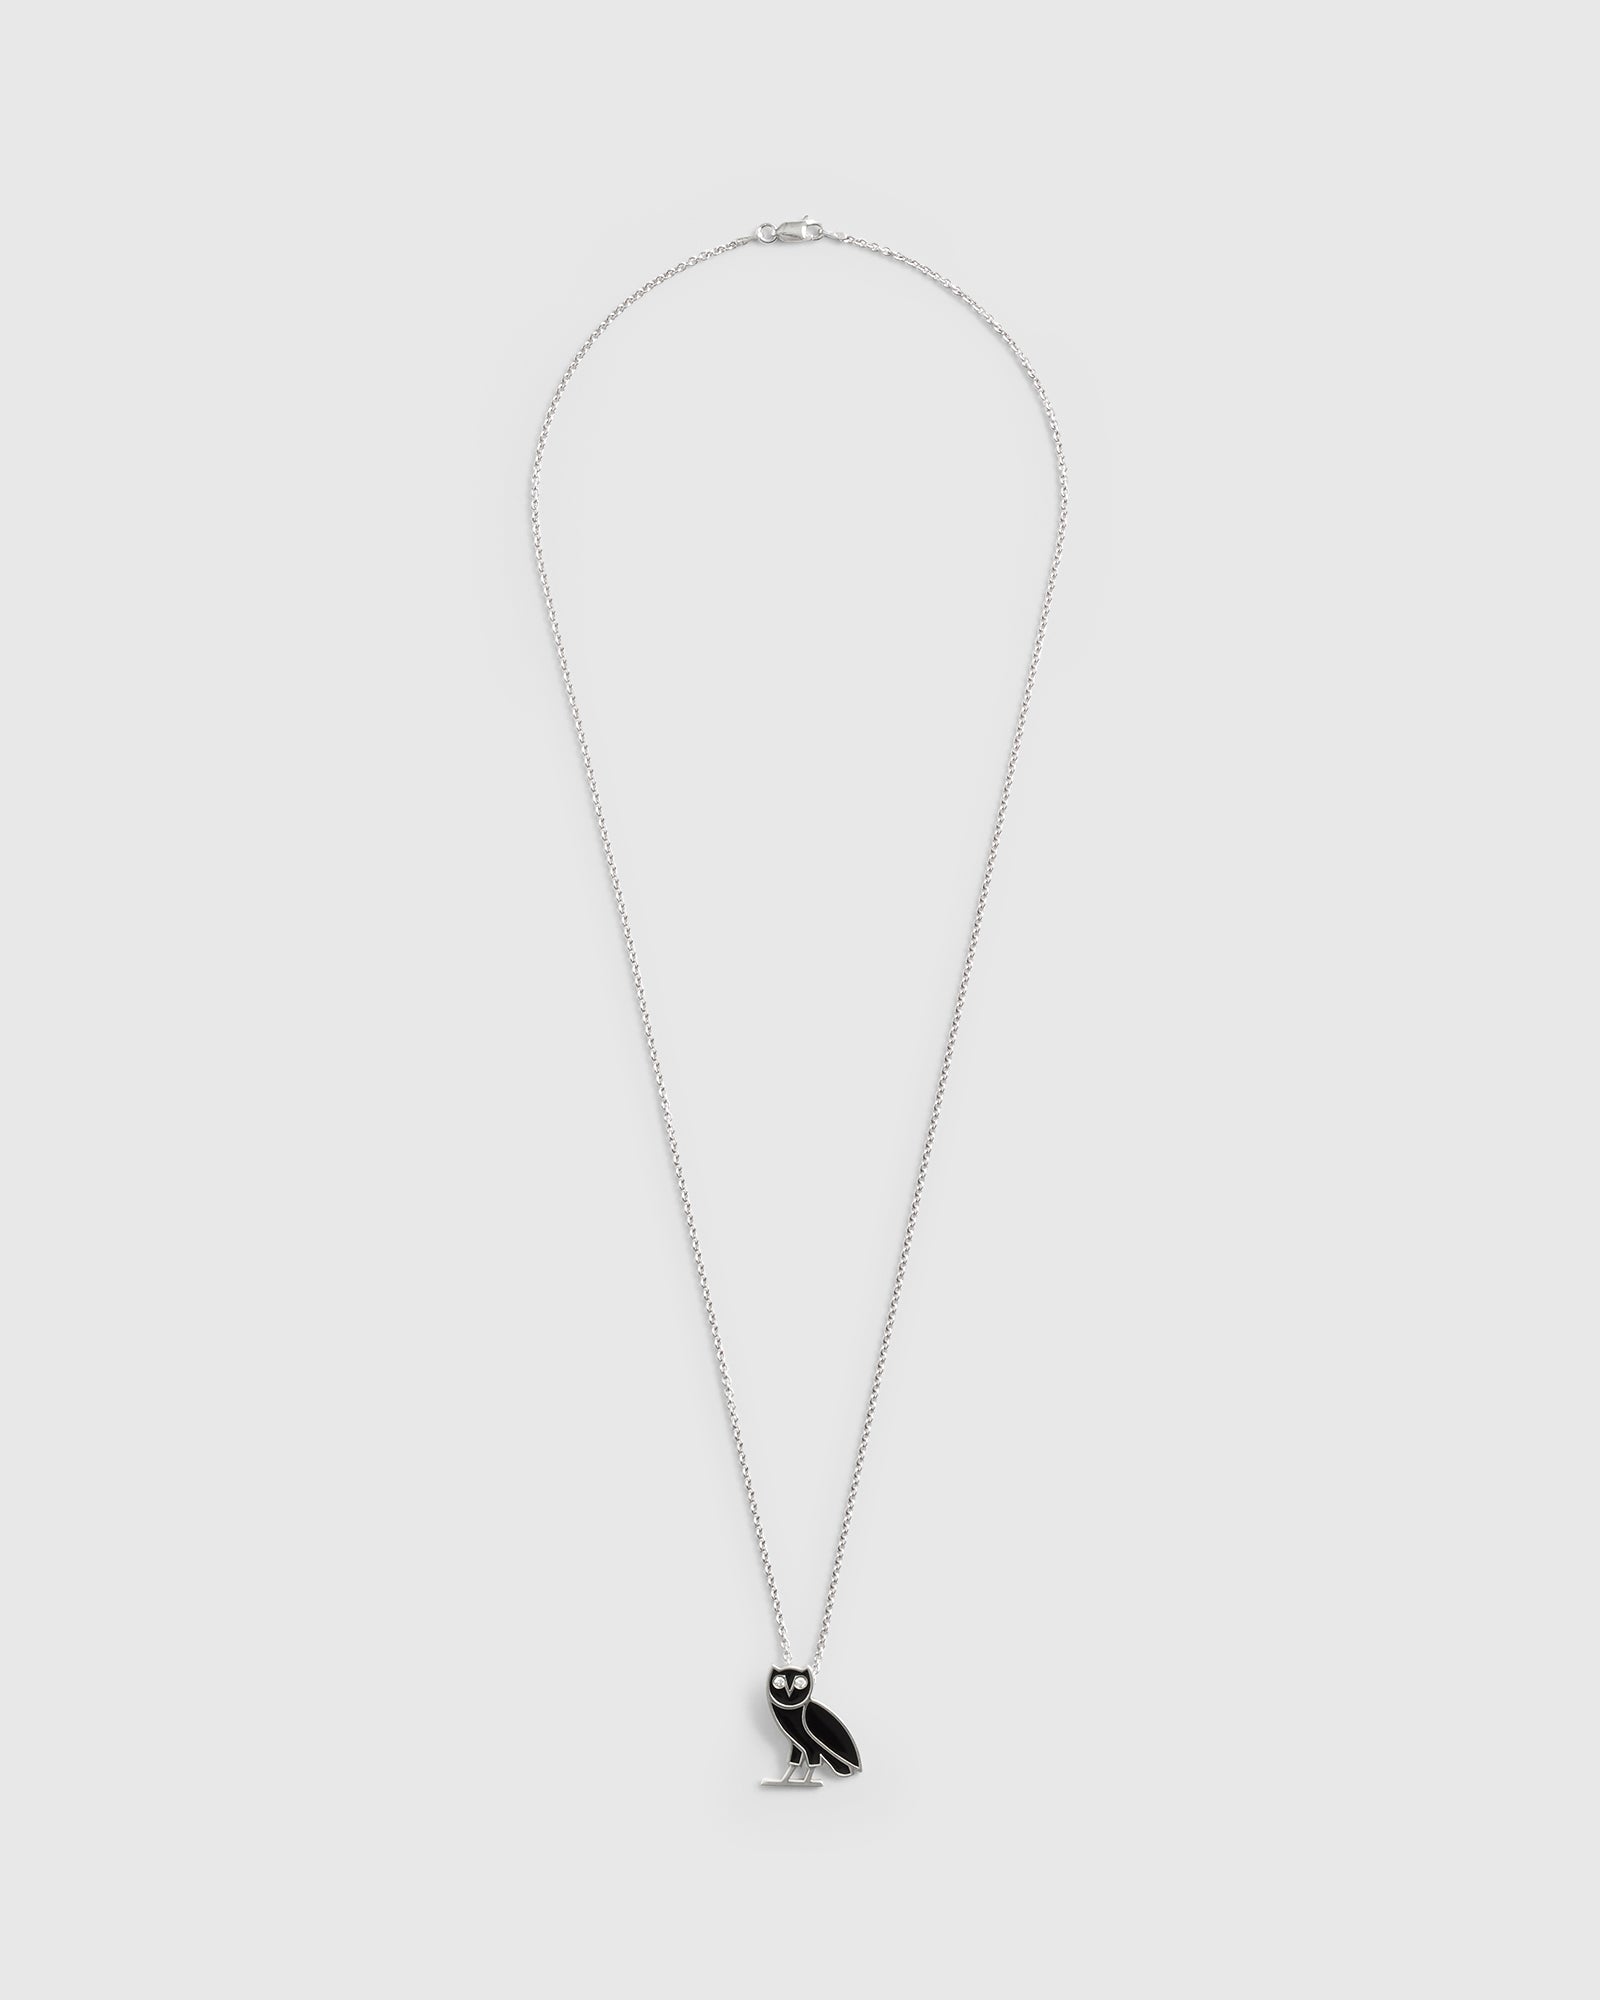 Pre-Order: Jacob & Co. OG Emblem Necklace - Silver IMAGE #2